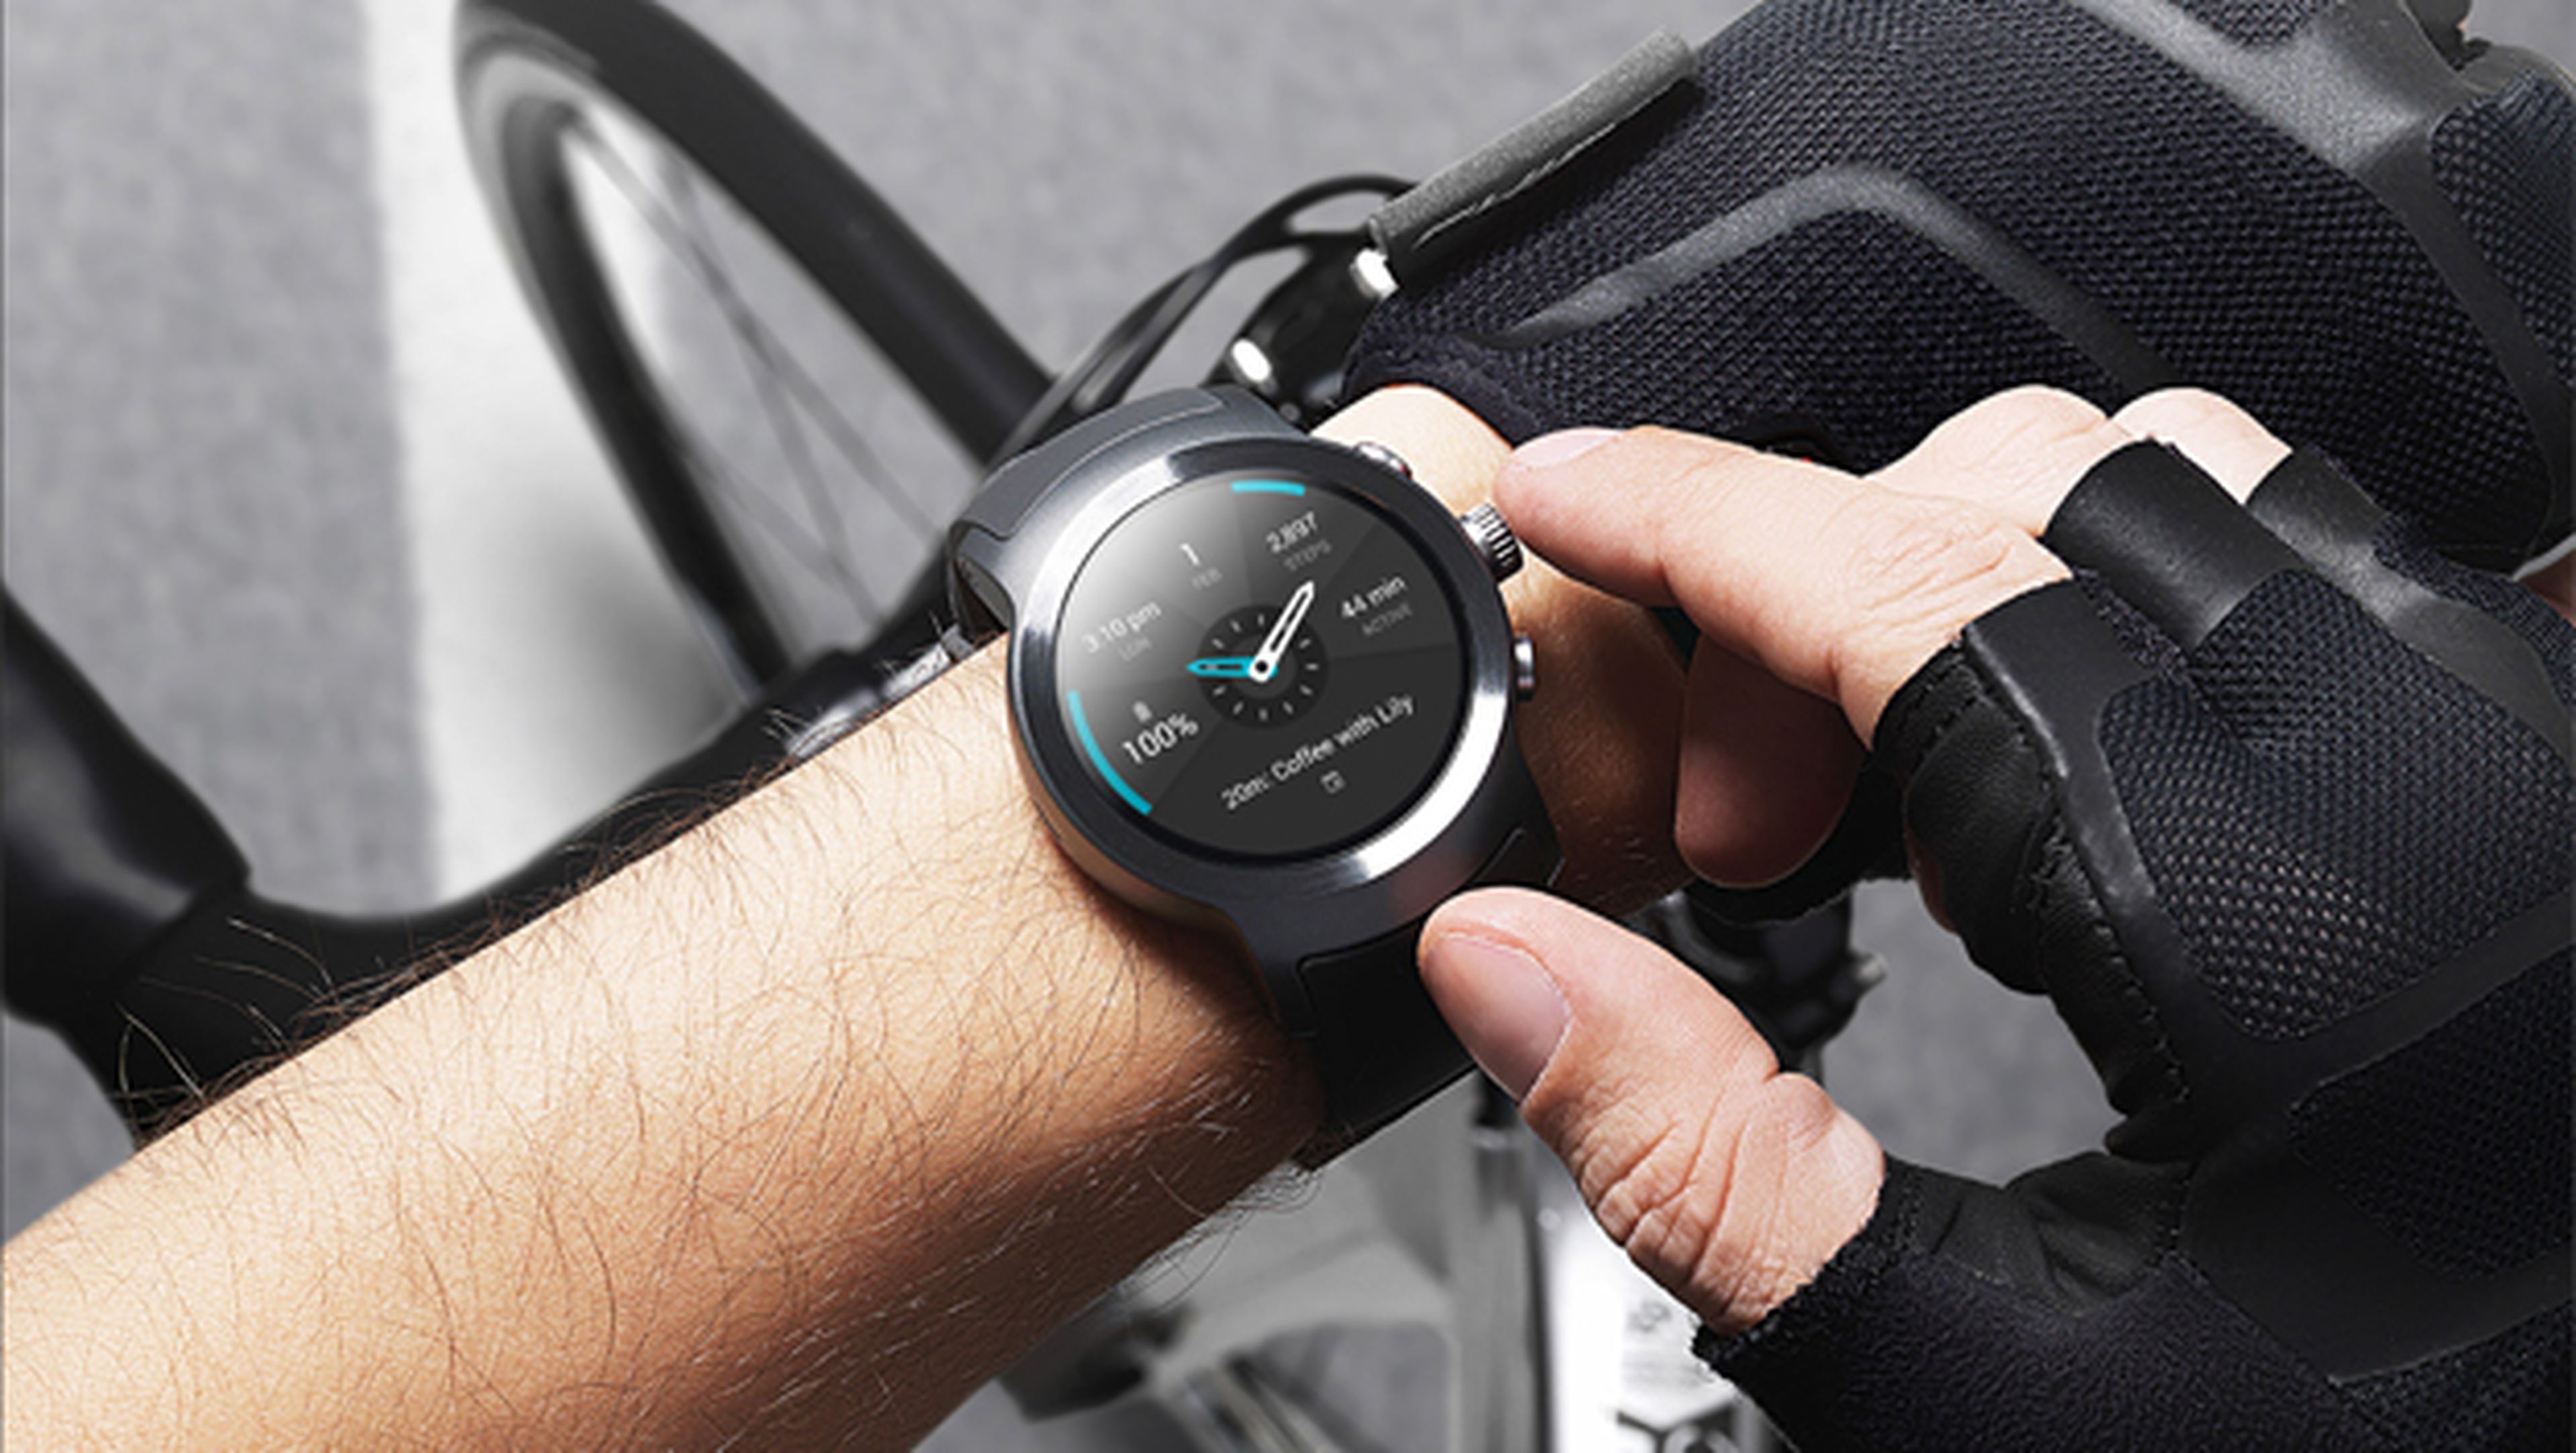 LG ha presentado dos relojes inteligentes con Android Wear 2.0: el Watch Style y el Watch Sport